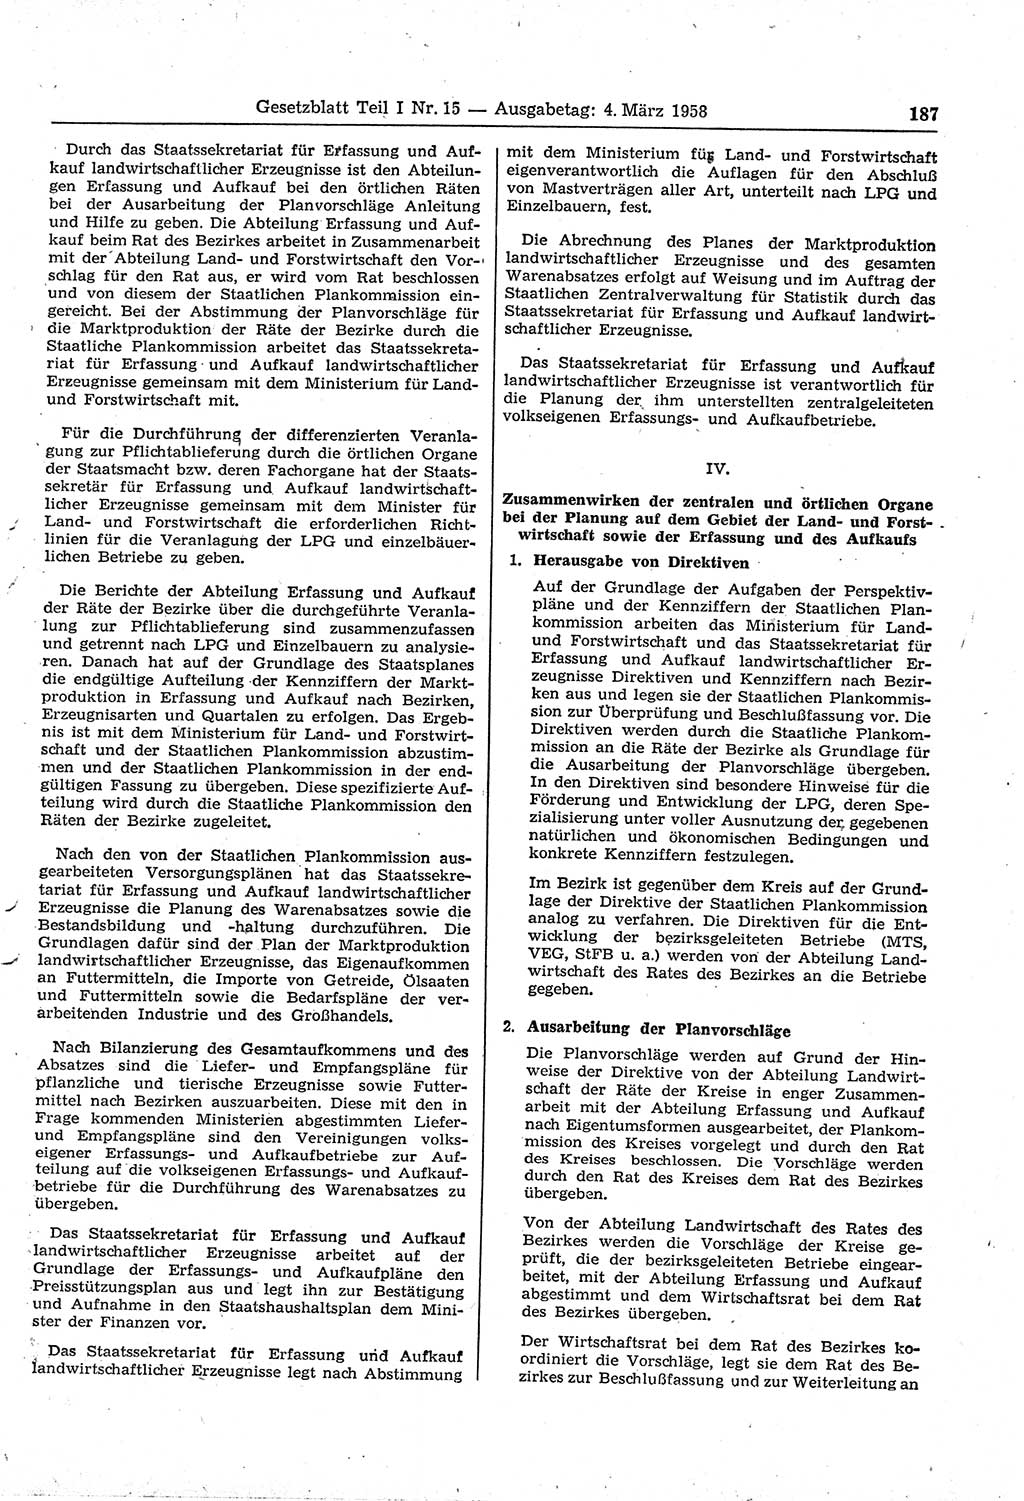 Gesetzblatt (GBl.) der Deutschen Demokratischen Republik (DDR) Teil Ⅰ 1958, Seite 187 (GBl. DDR Ⅰ 1958, S. 187)